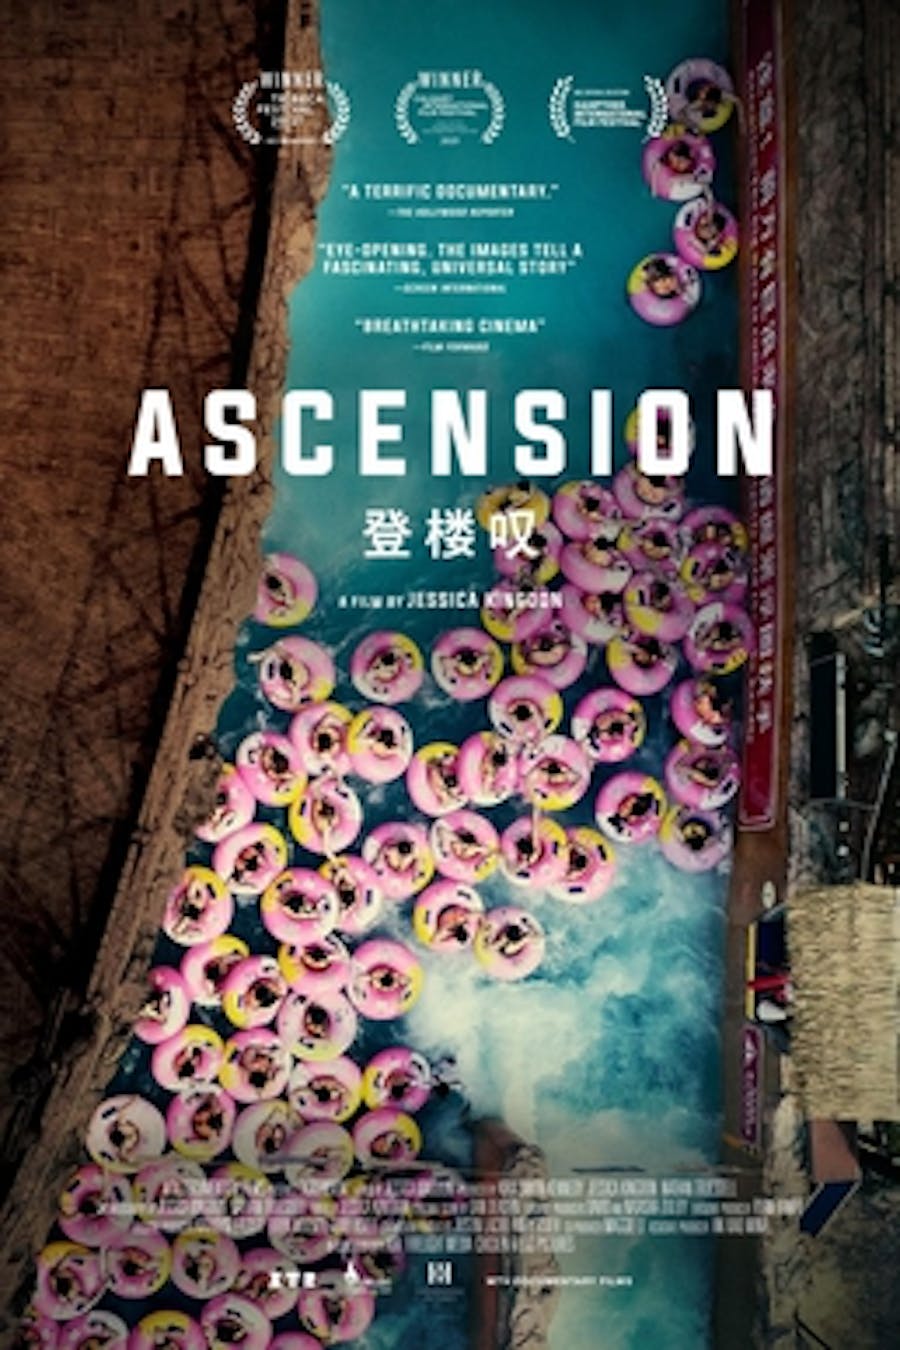 Ascension Film Poster